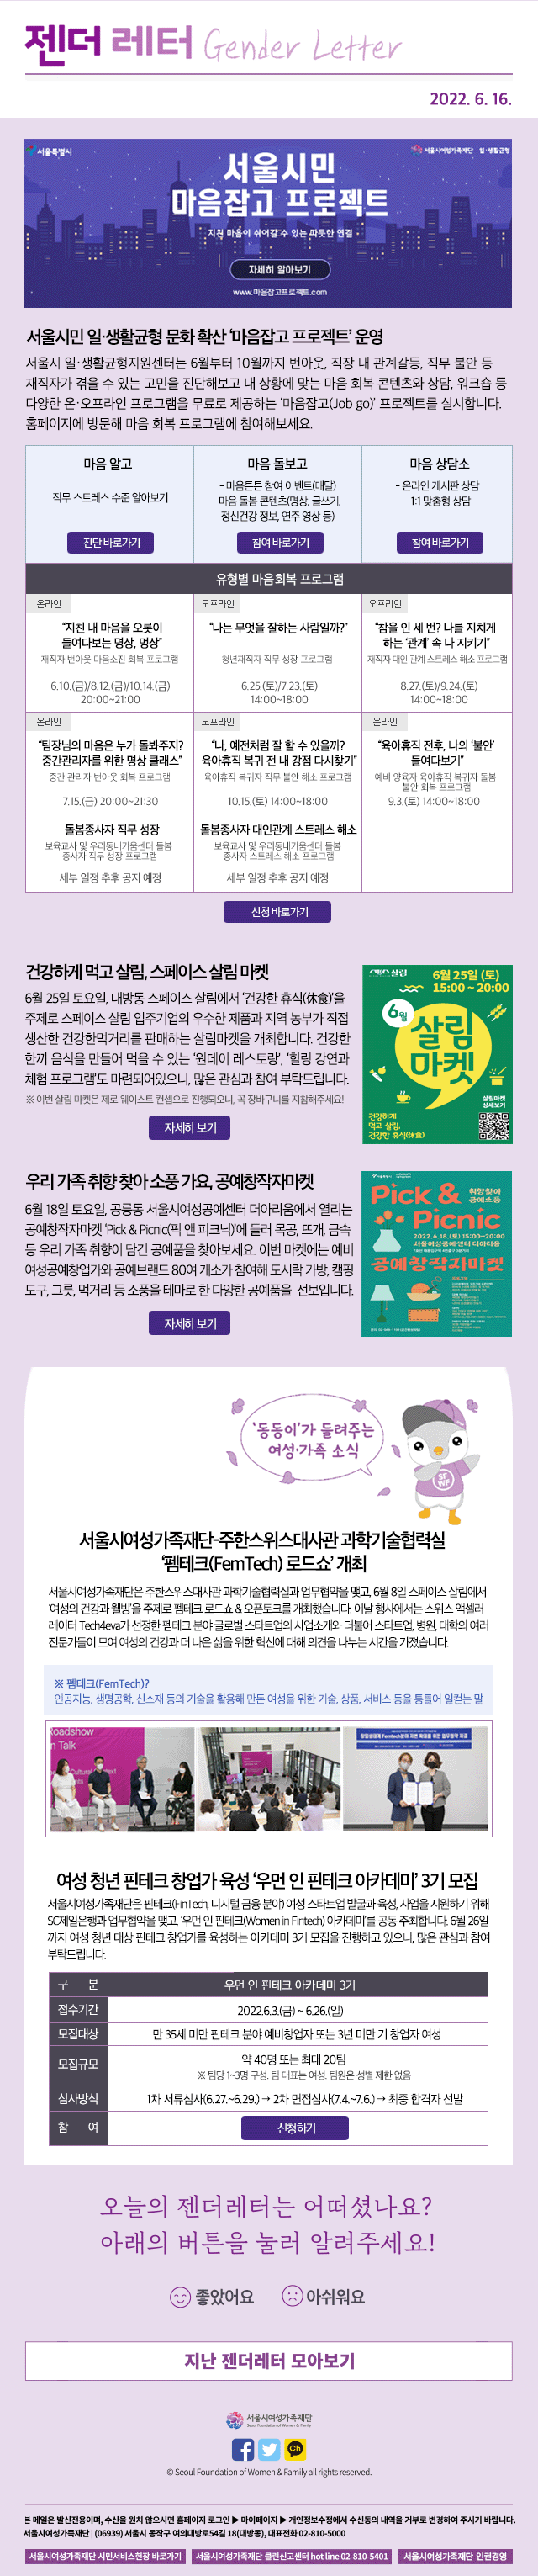 서울시민 일·생활균형 문화 확산 ‘마음잡고 프로젝트’ 운영